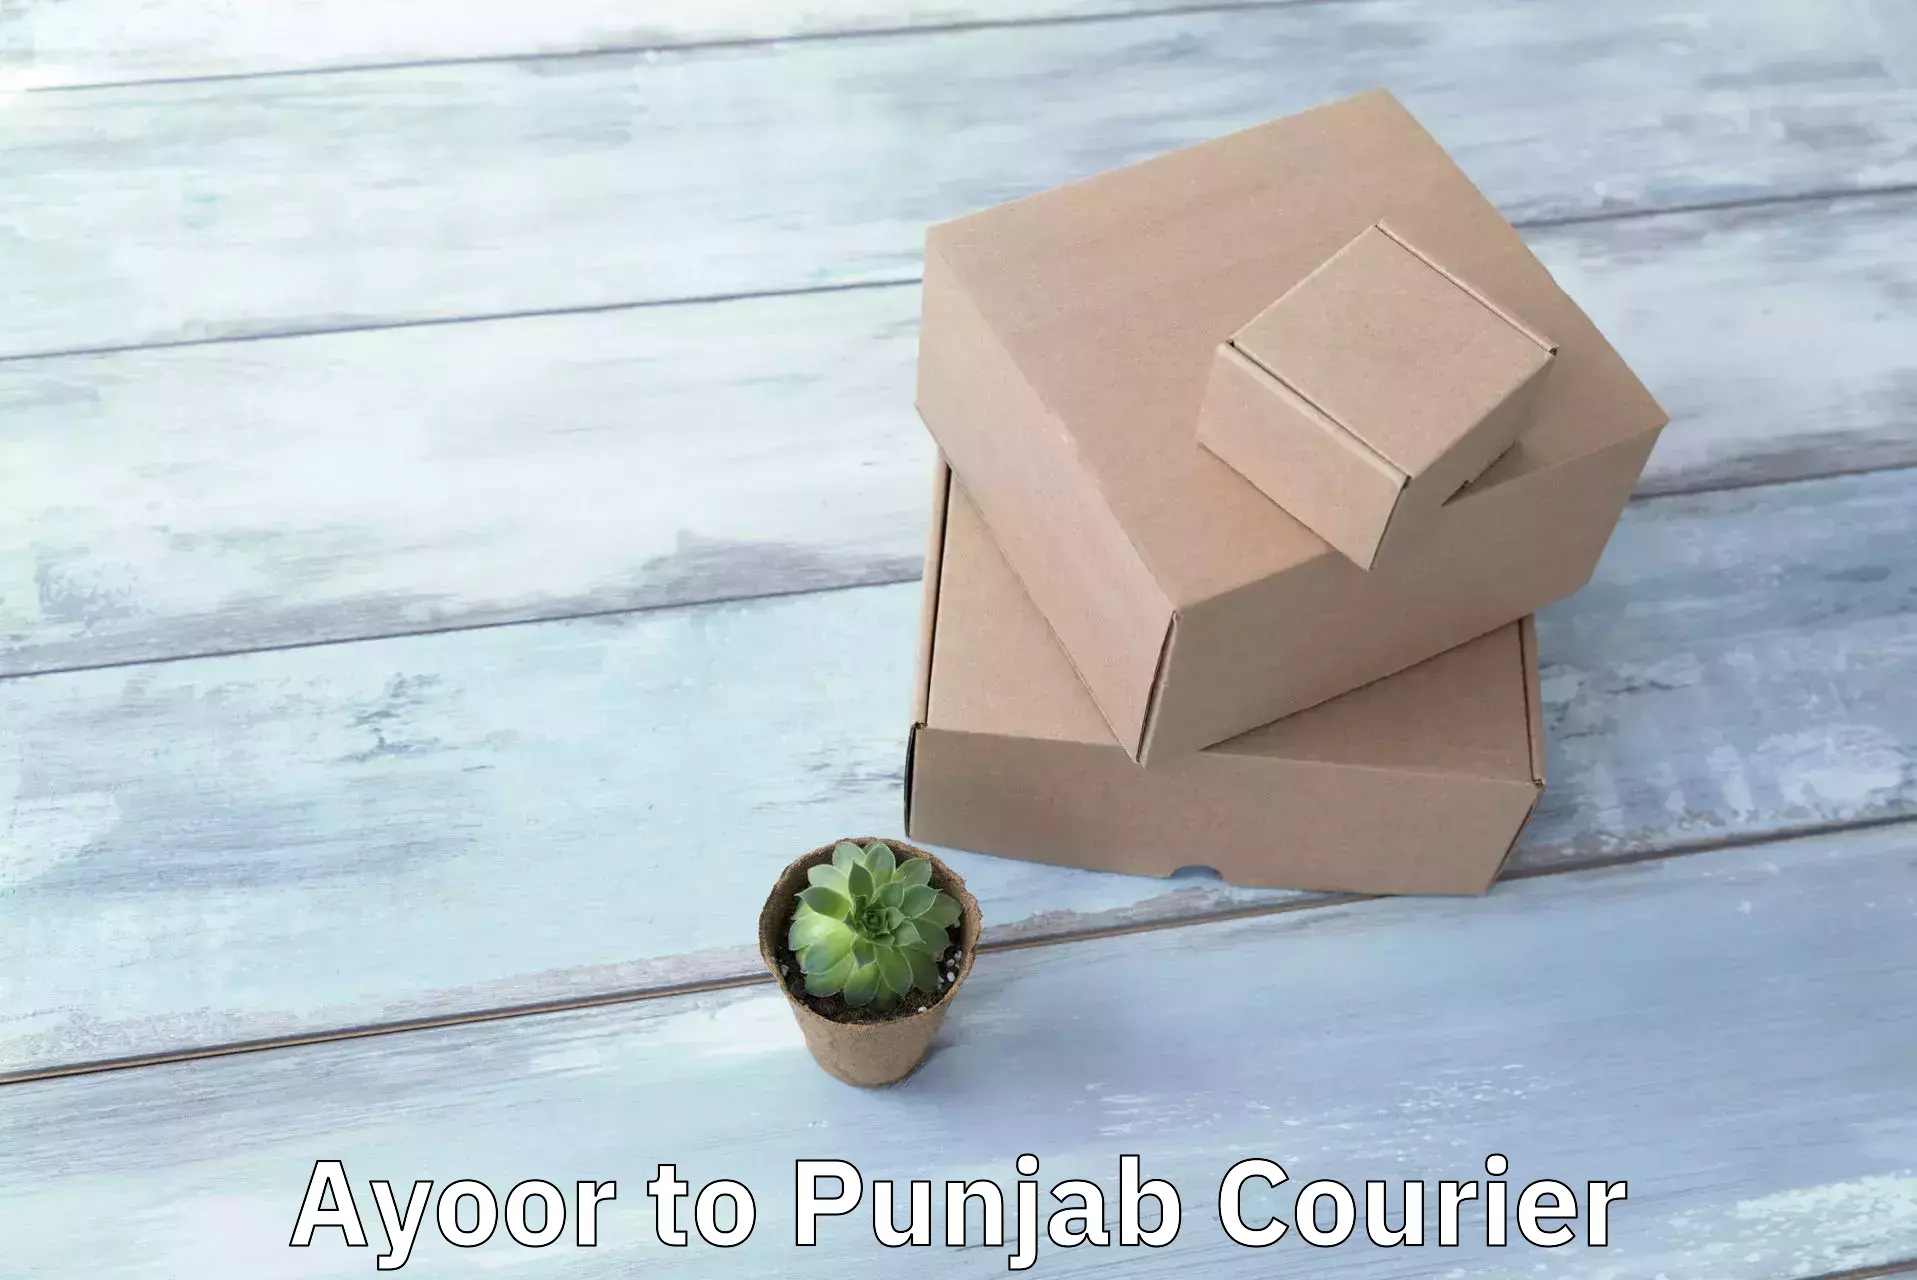 Express package handling Ayoor to Punjab